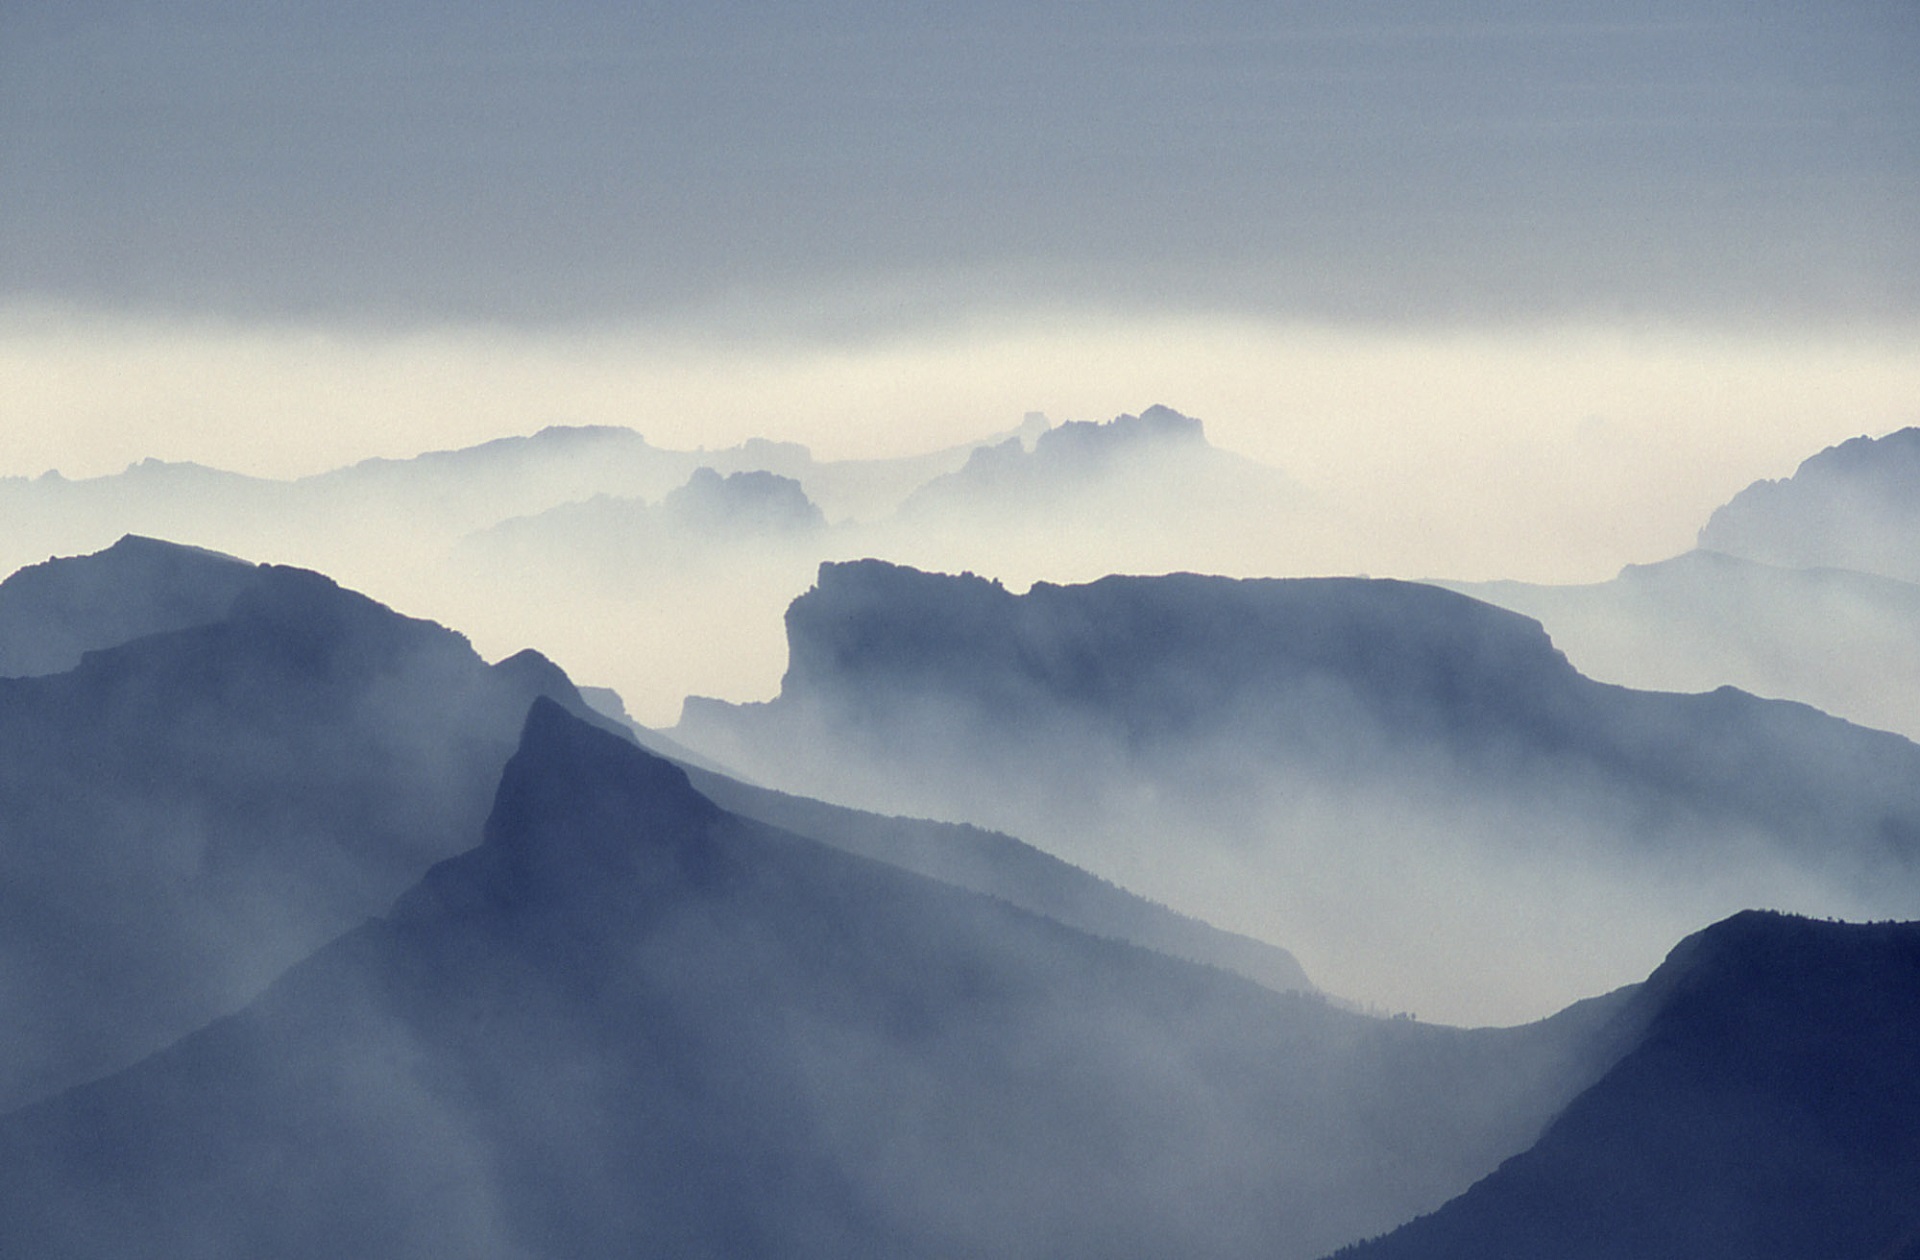 Smoky mountains photo